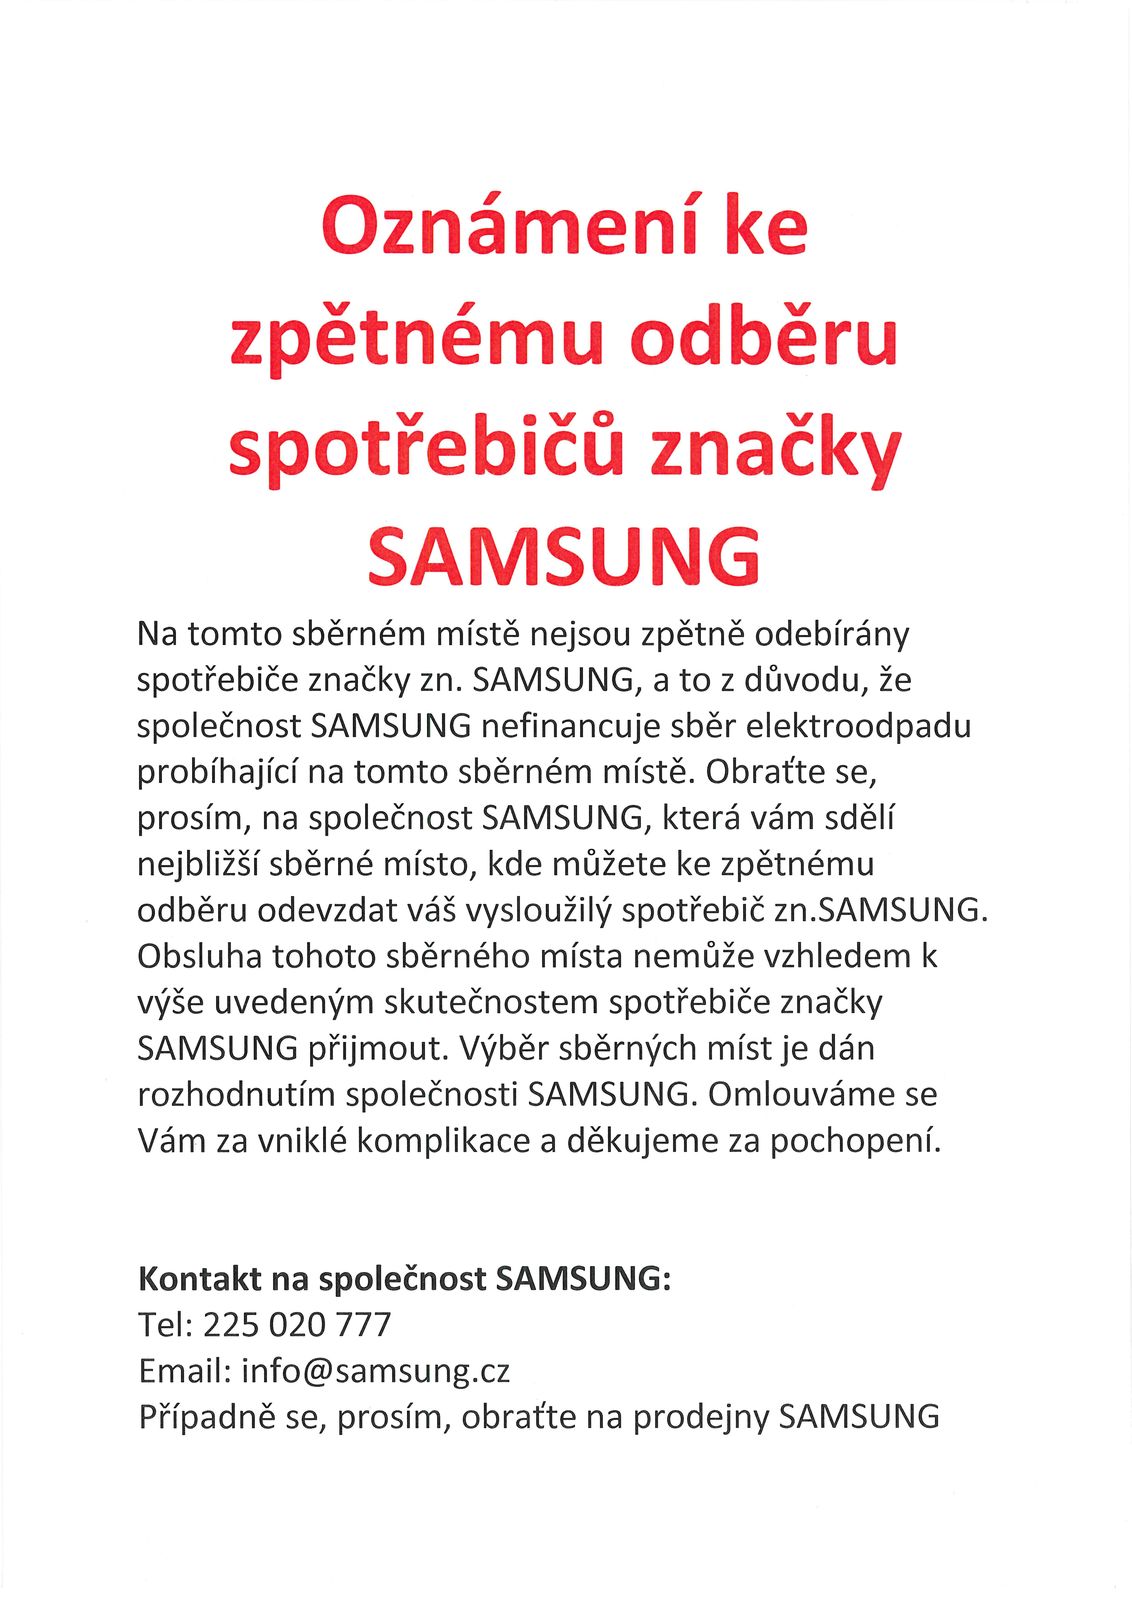 oznámení - zn.Samsung.jpg